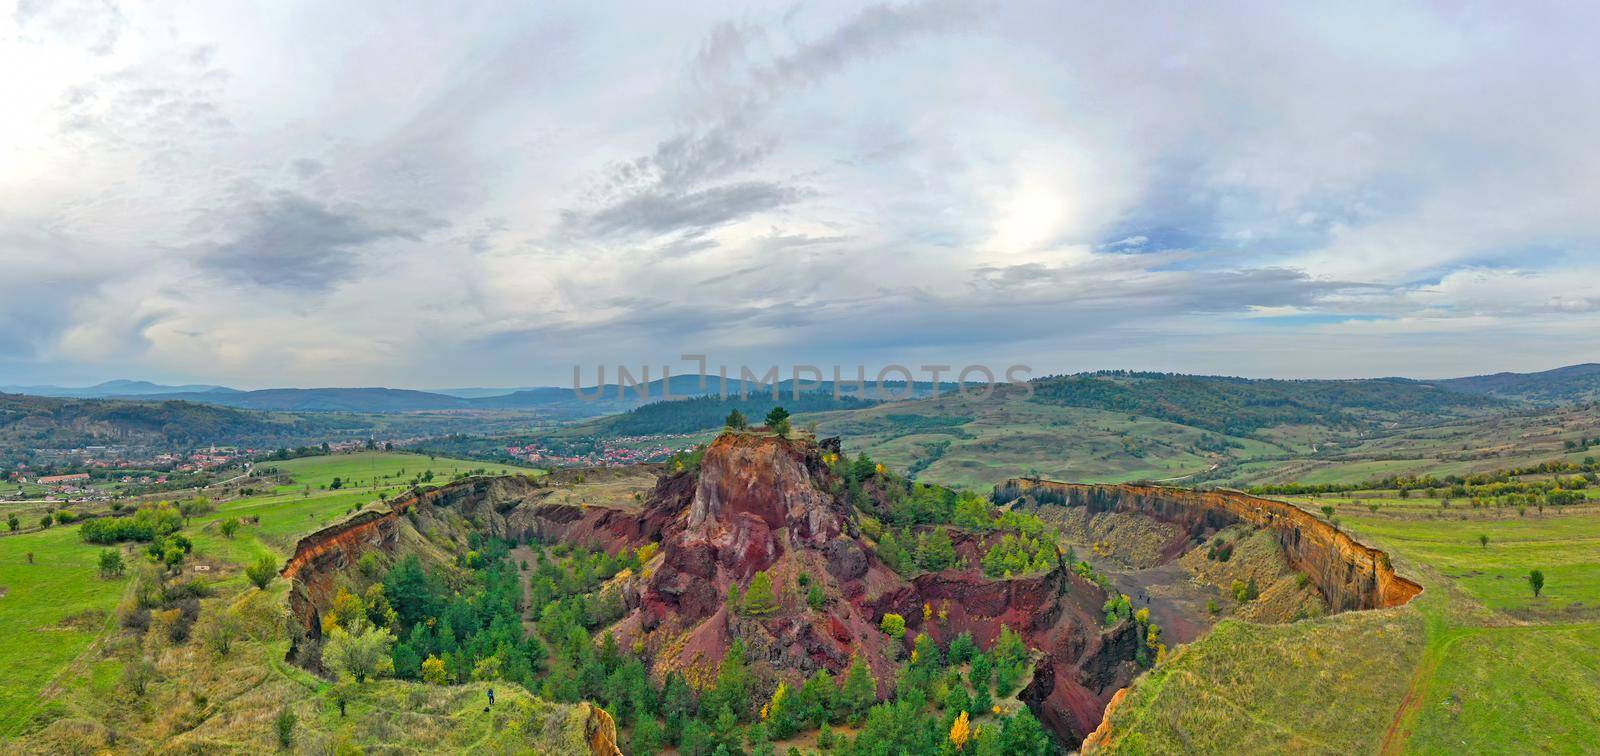 Sleeping volcano panorama by savcoco